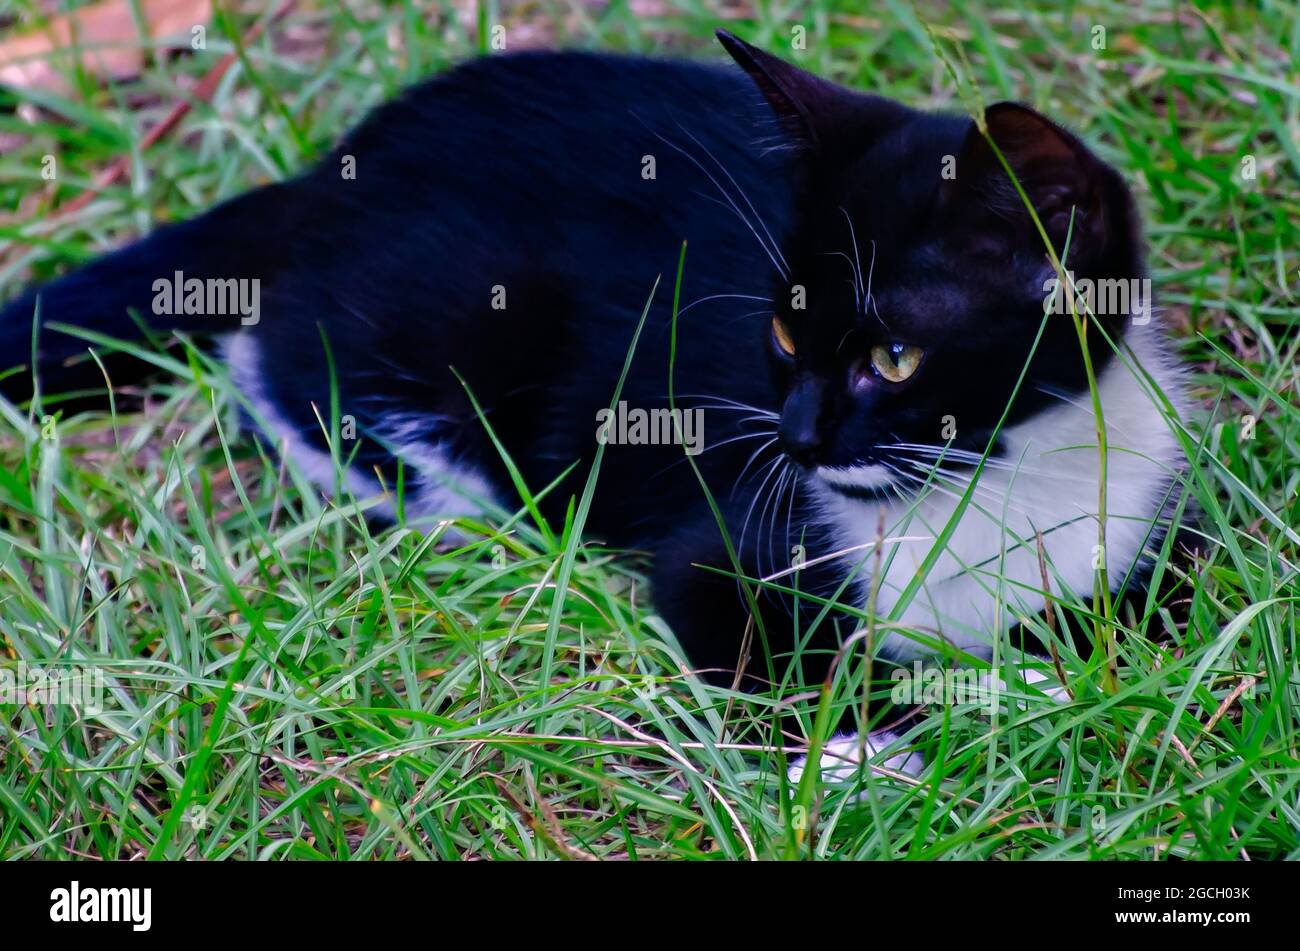 Fancy, un gatito de tuxedo blanco y negro, juega en la hierba, 8 de agosto de 2021. Los gatos de Tuxedo reciben su nombre por su patrón de color blanco y negro. Foto de stock